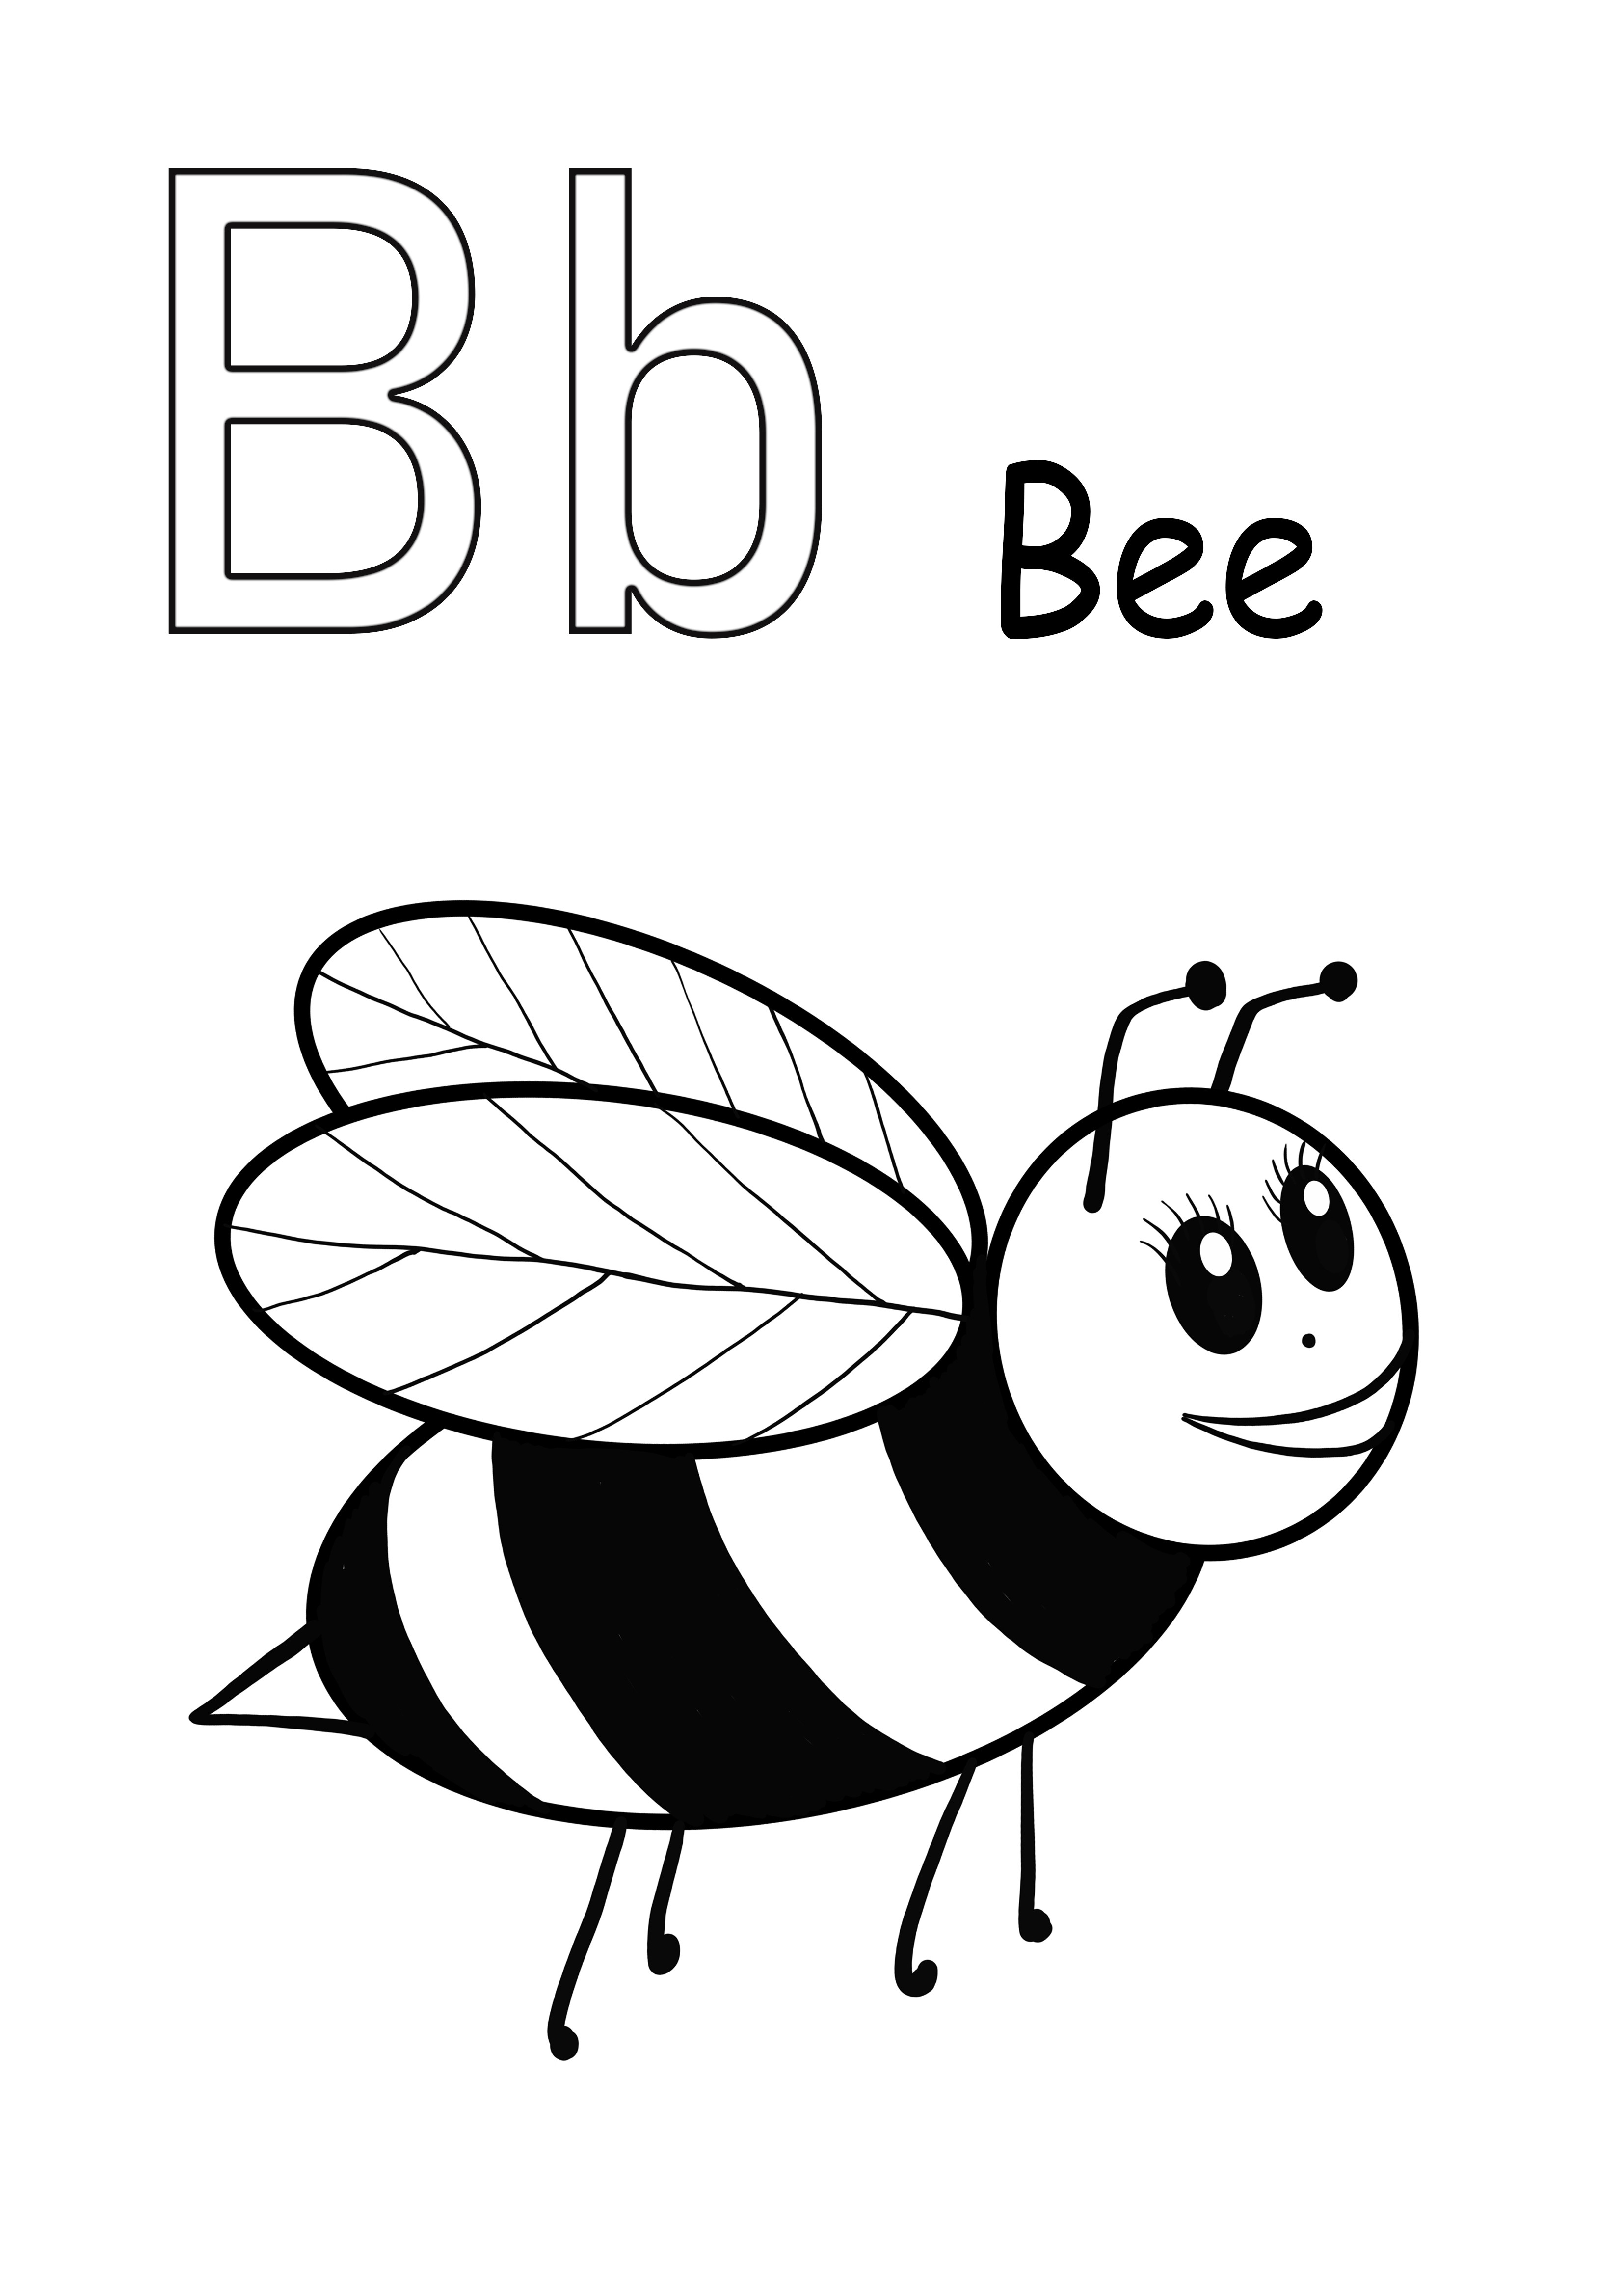 Kirjain B on tarkoitettu mehiläisten värjäämiseen ja ilmaiseen kuvan lataamiseen